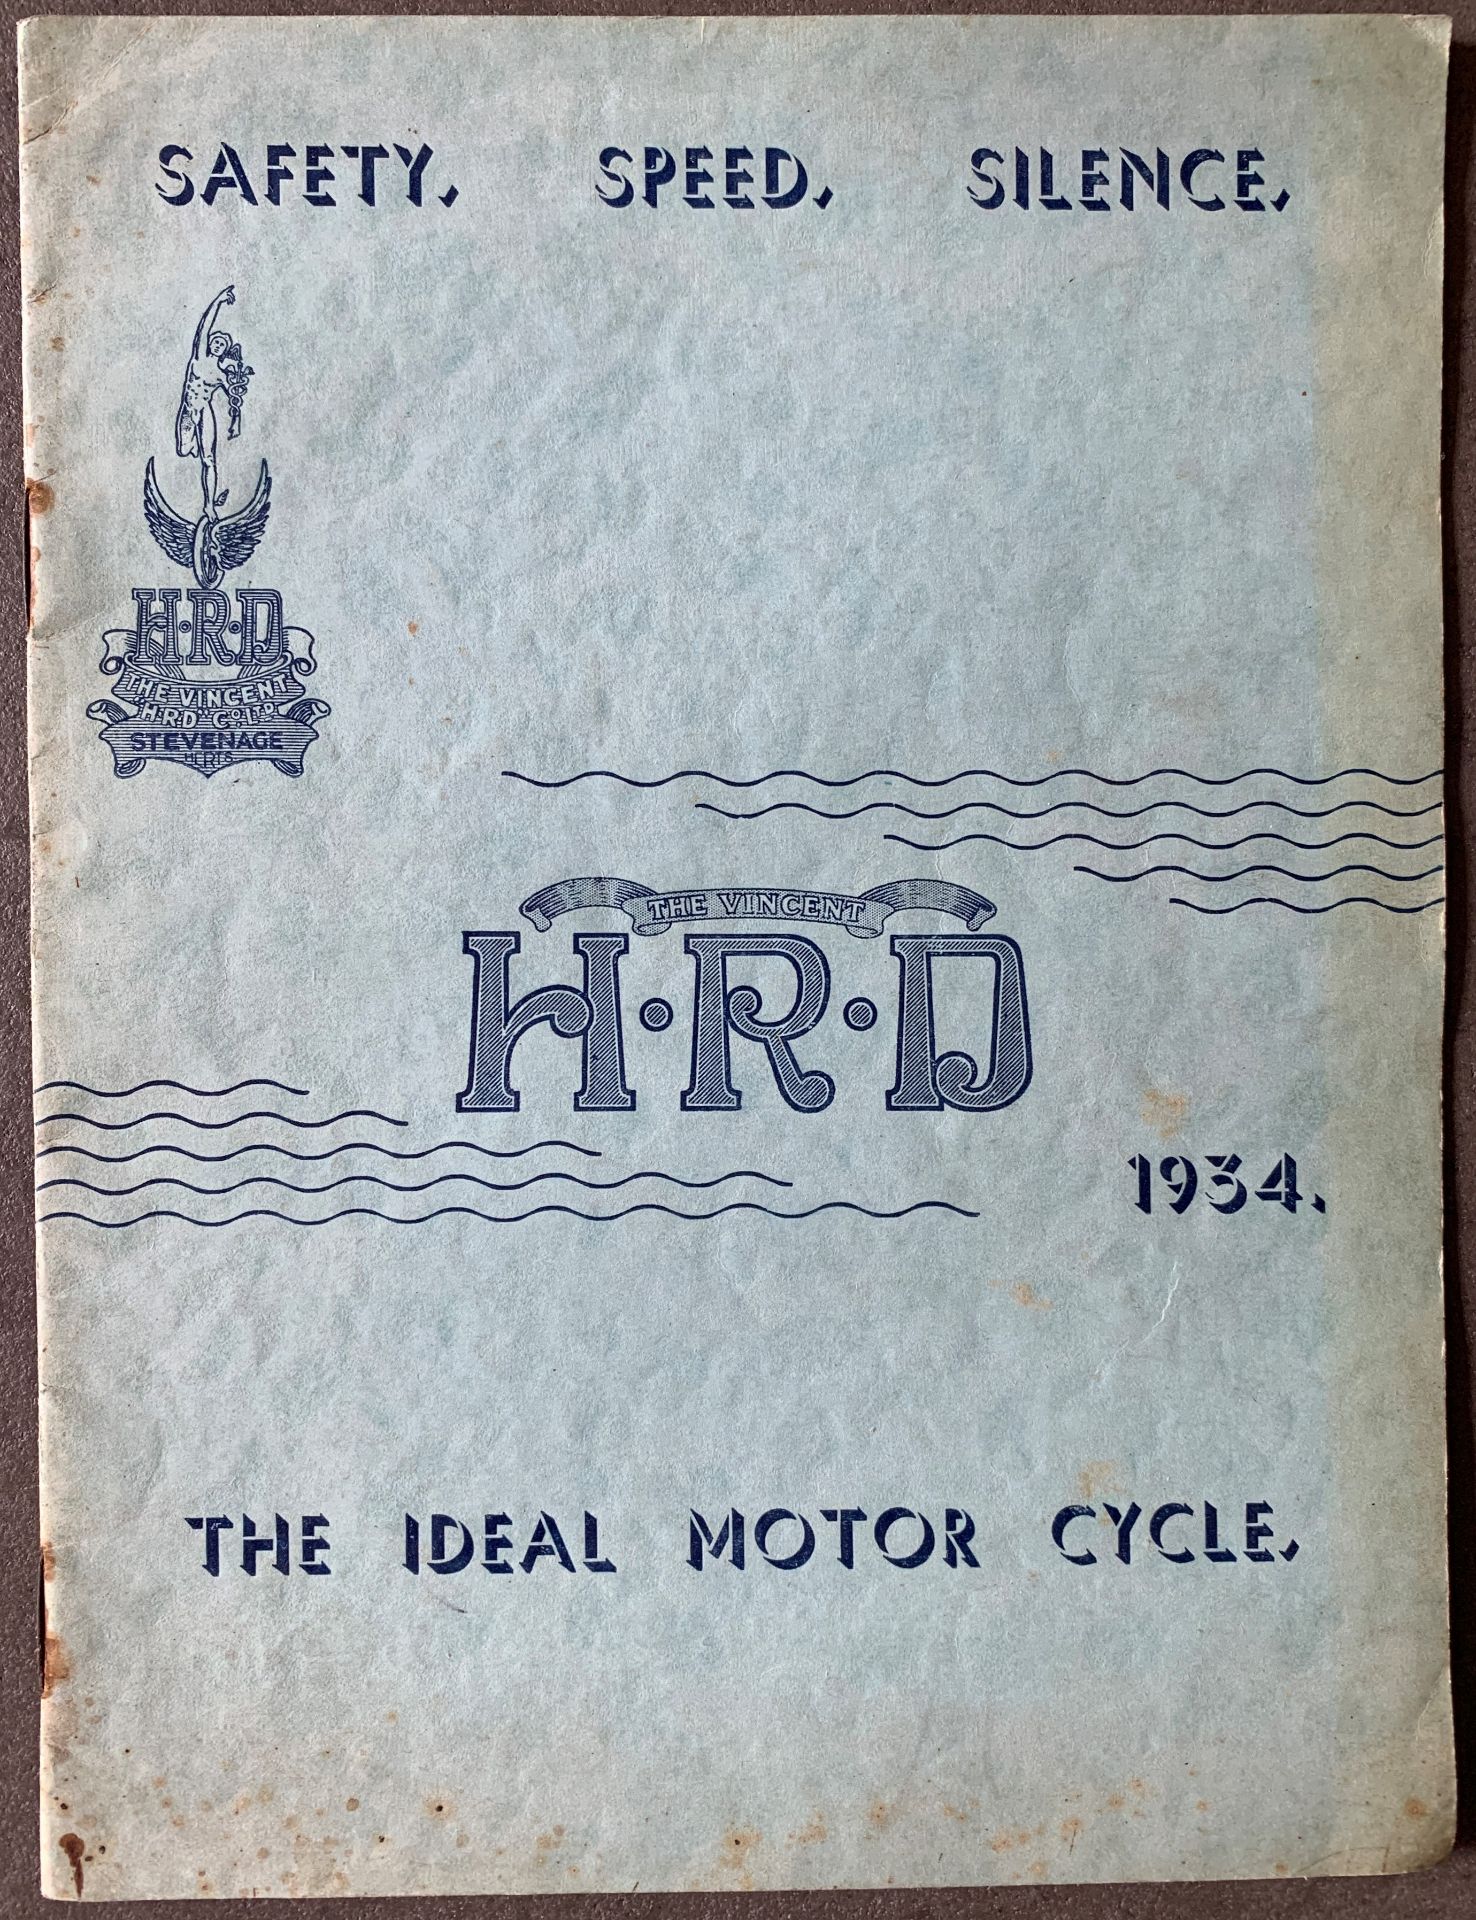 A rare 1934 Vincent-HRD sales brochure